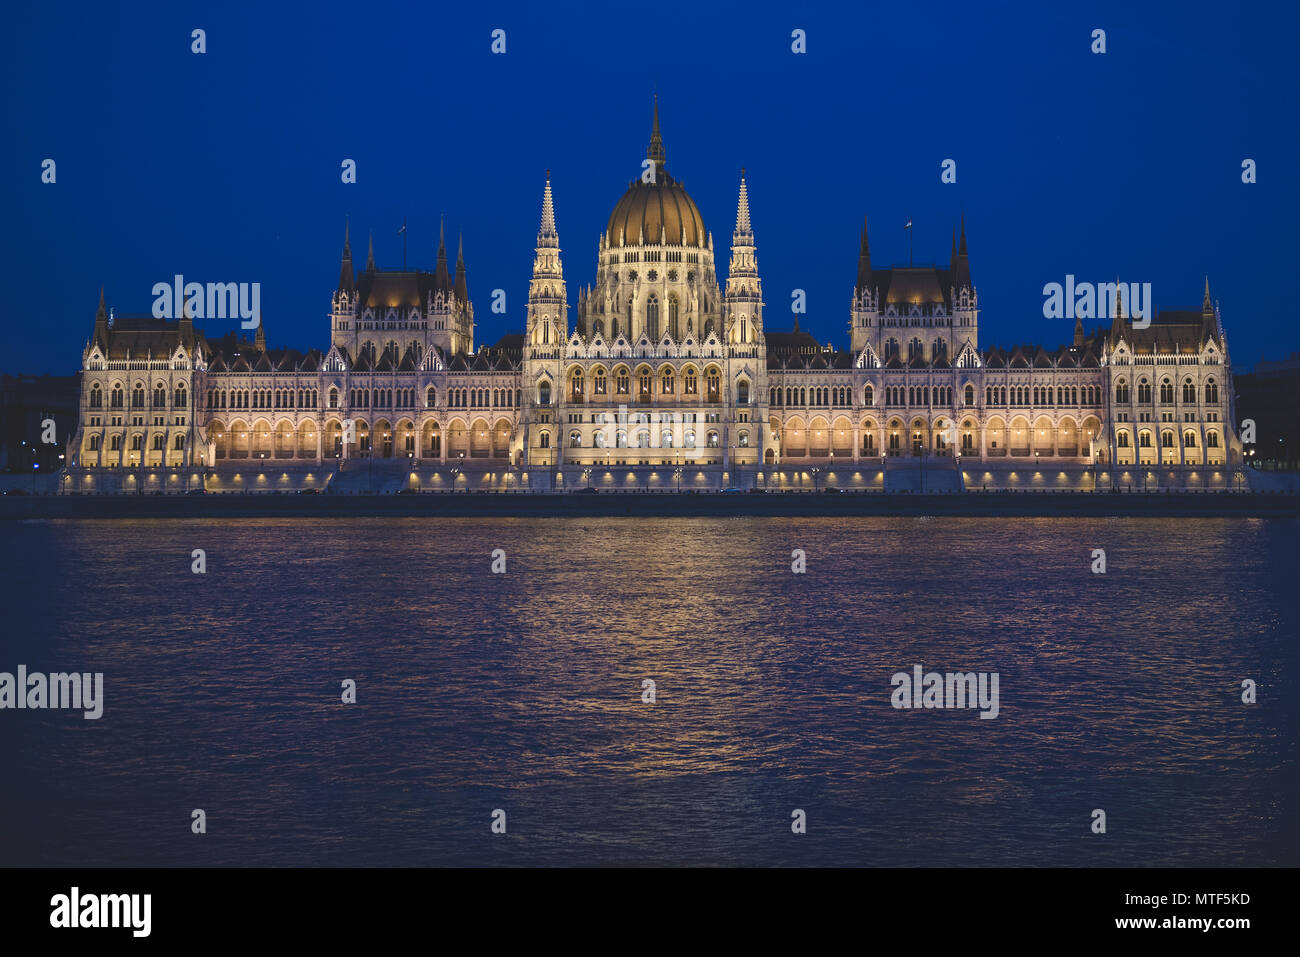 Escena nocturna del edificio del parlamento húngaro en el banco del río Danubio, visto desde el lado de Buda. Foto de stock